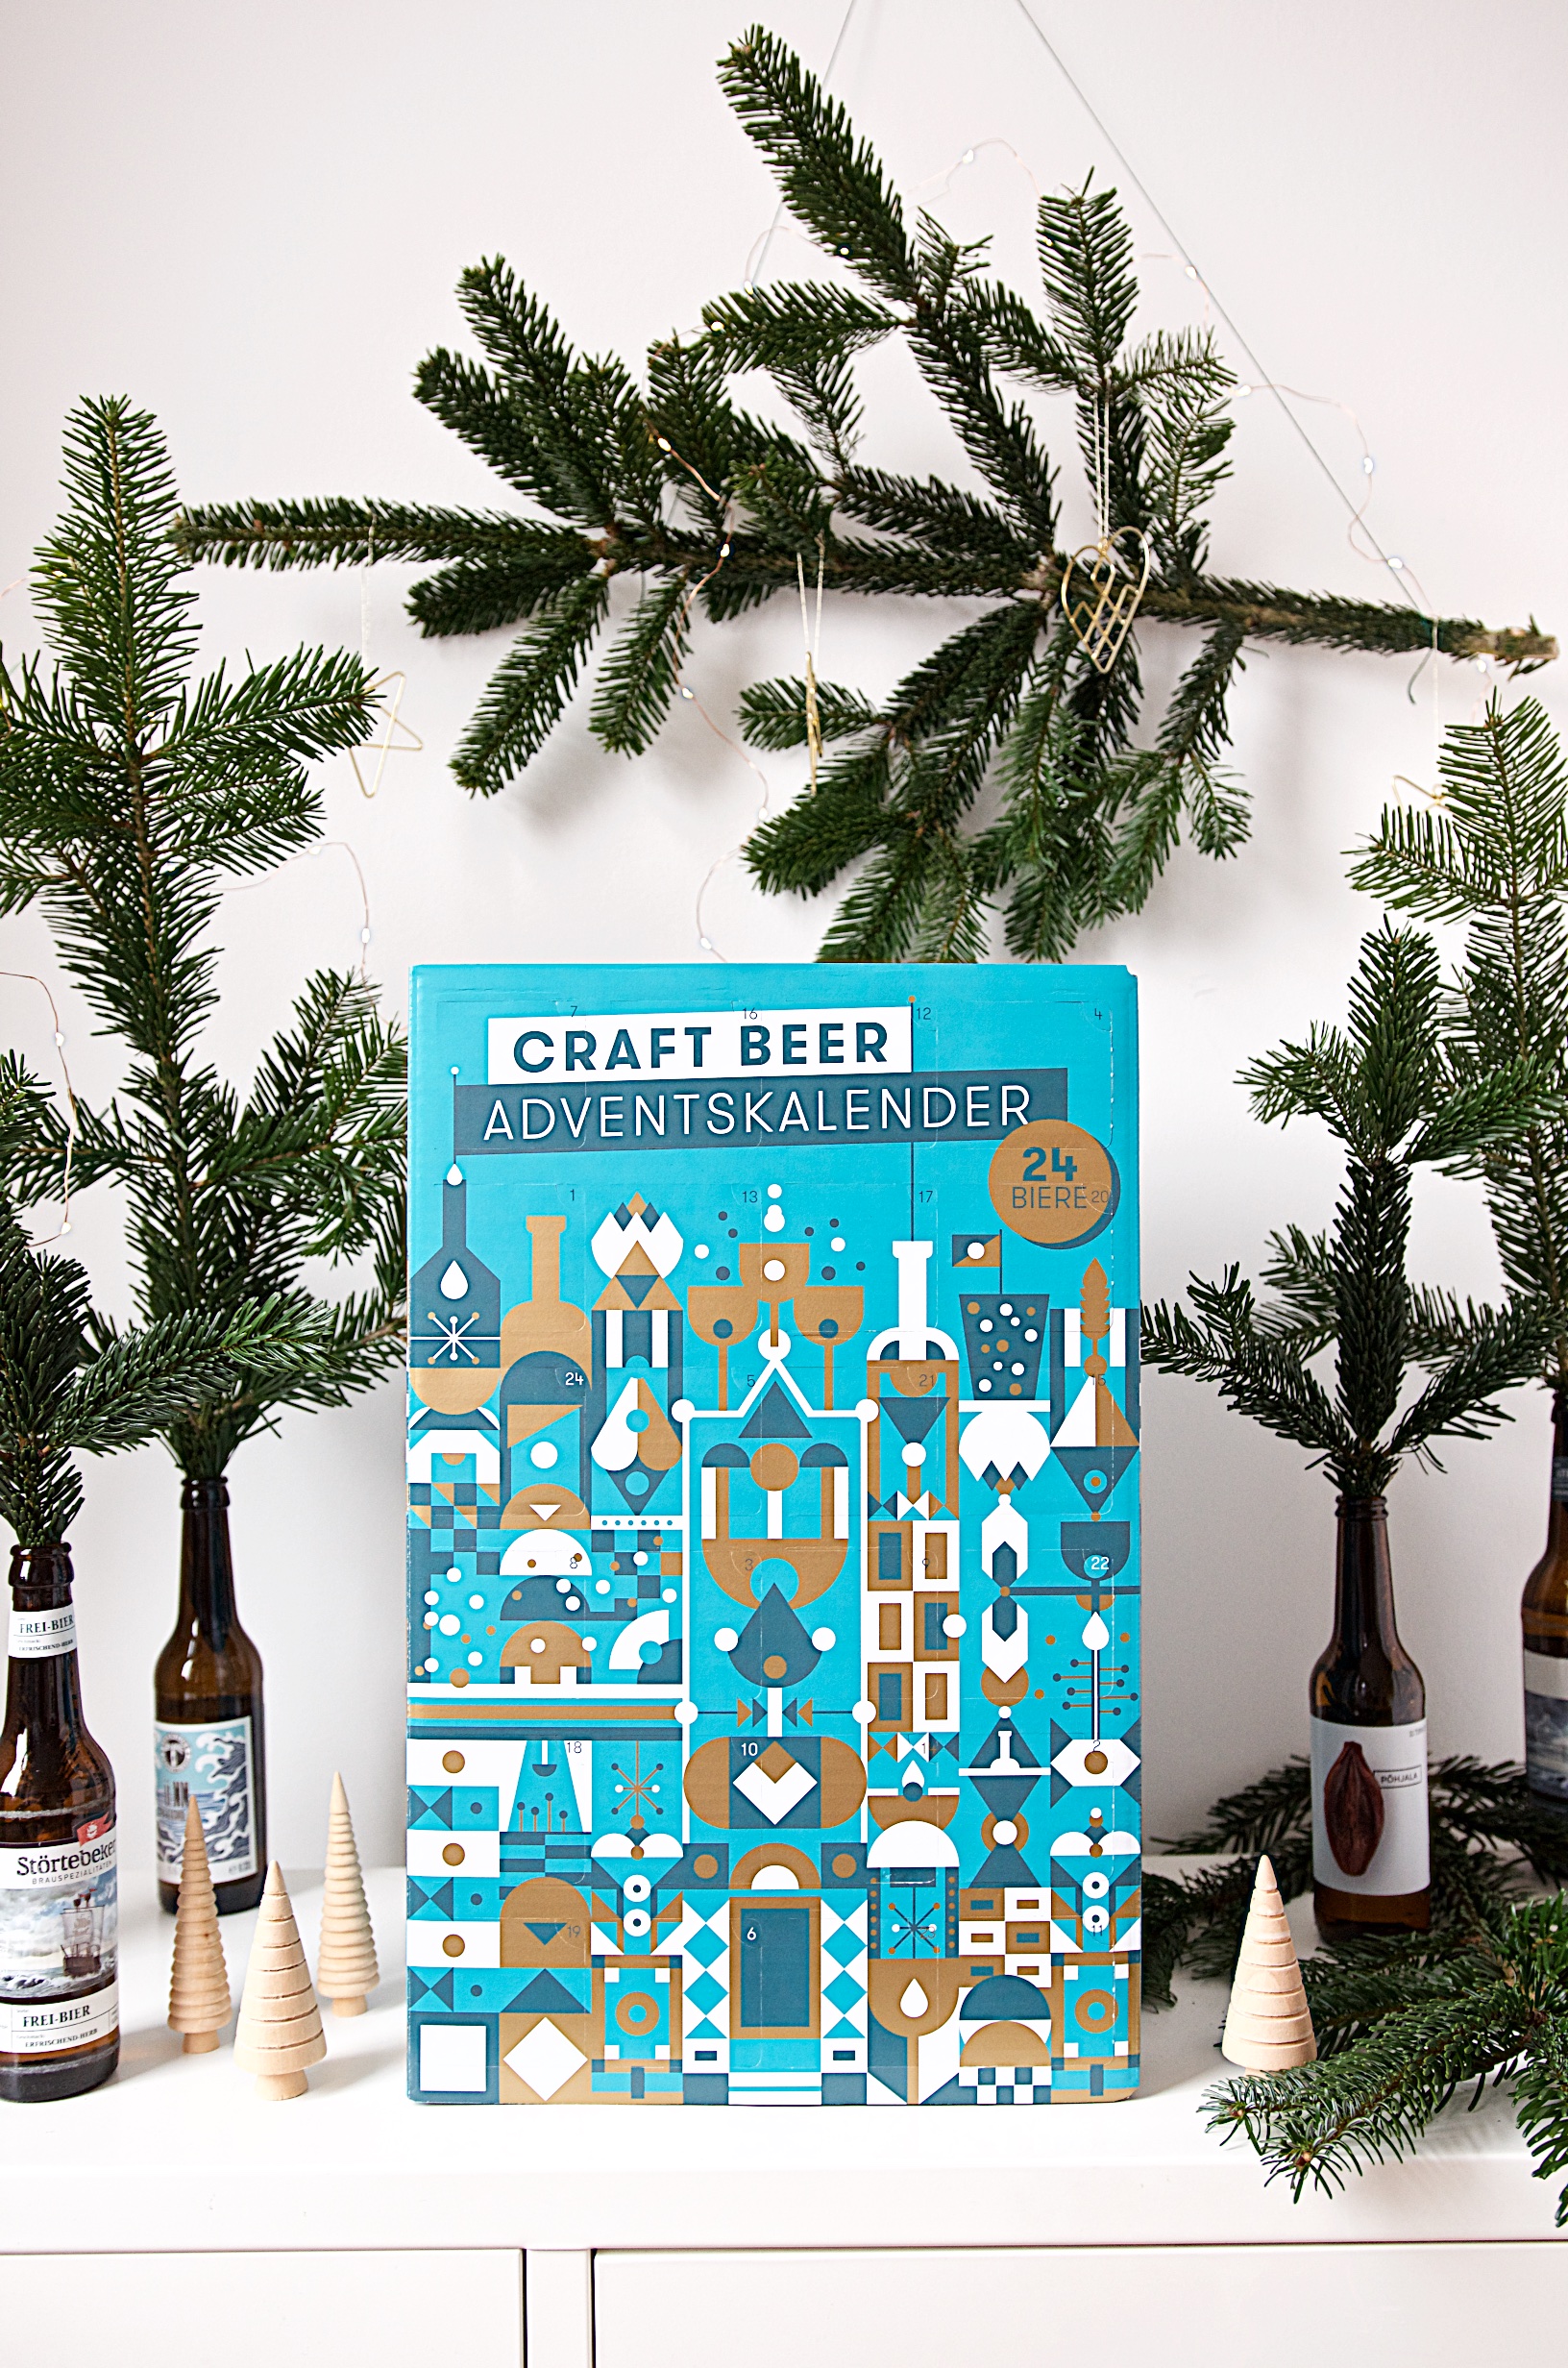 Craft Beer Adventskalender von Beyond Beer | Adventskalender für Männer und Bierliebhaber